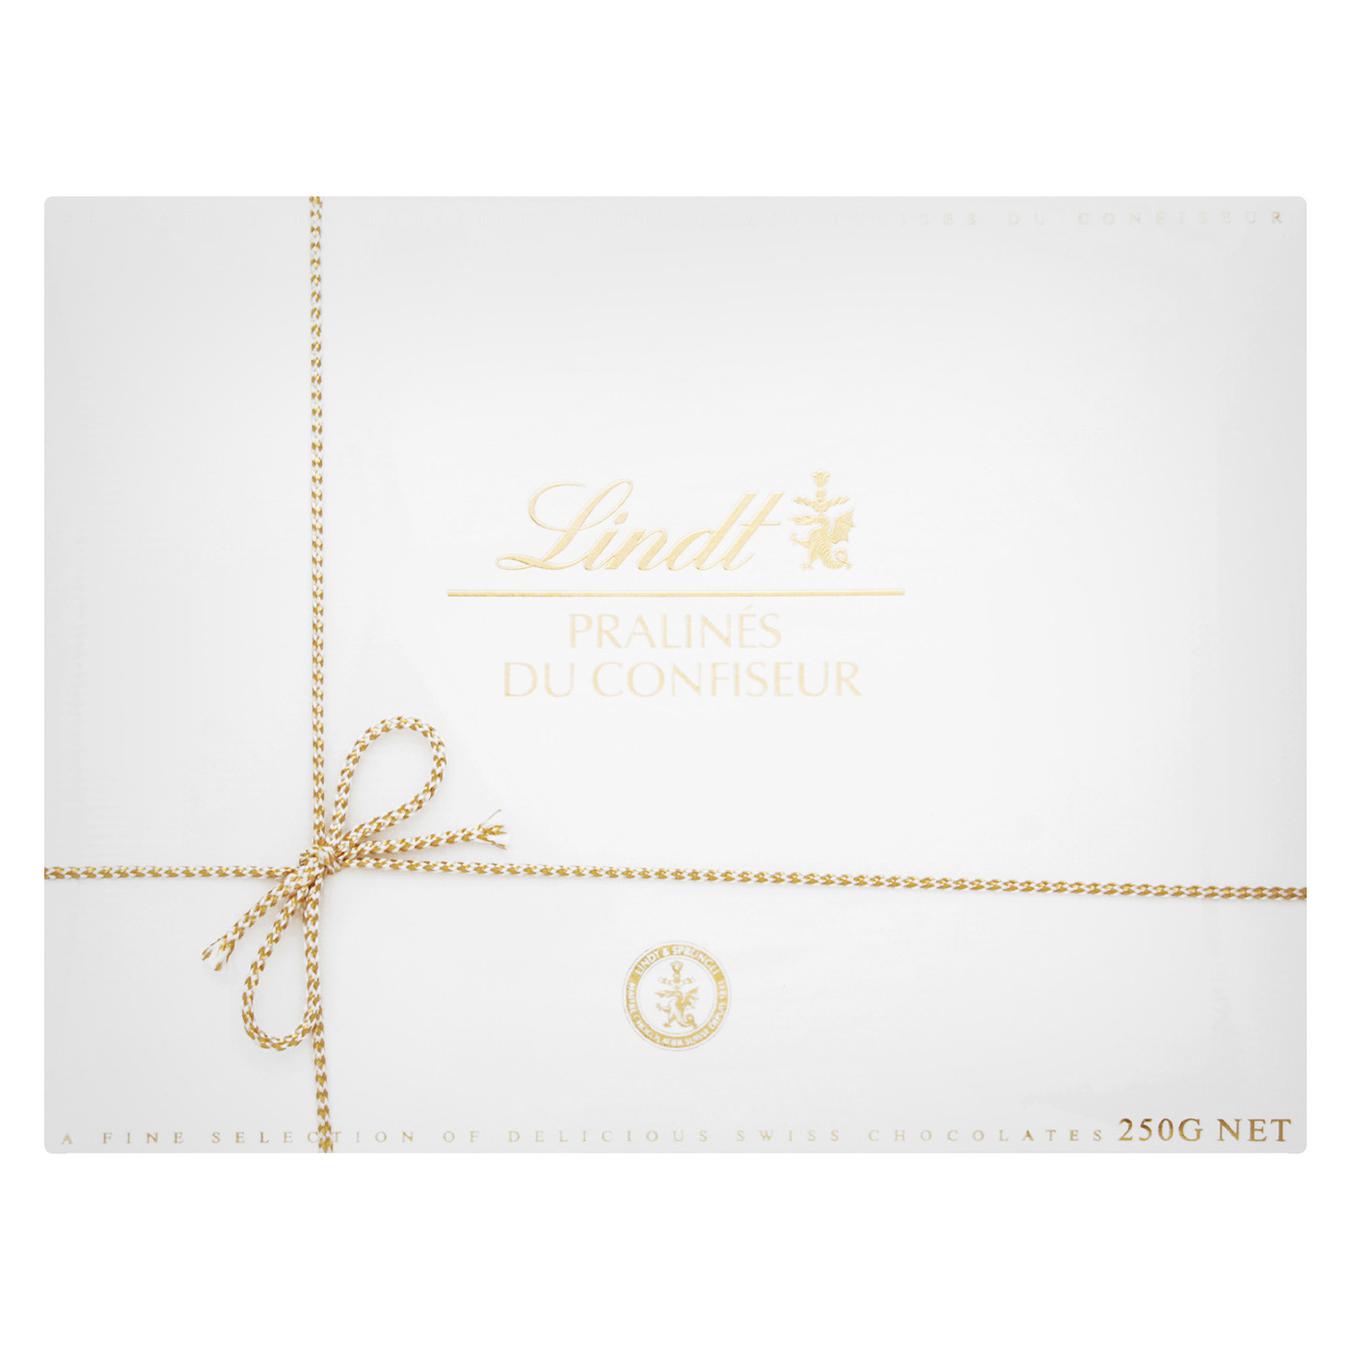 Набор шоколадных конфет Lindt Pralines Du Confiseur Ассорти 250г